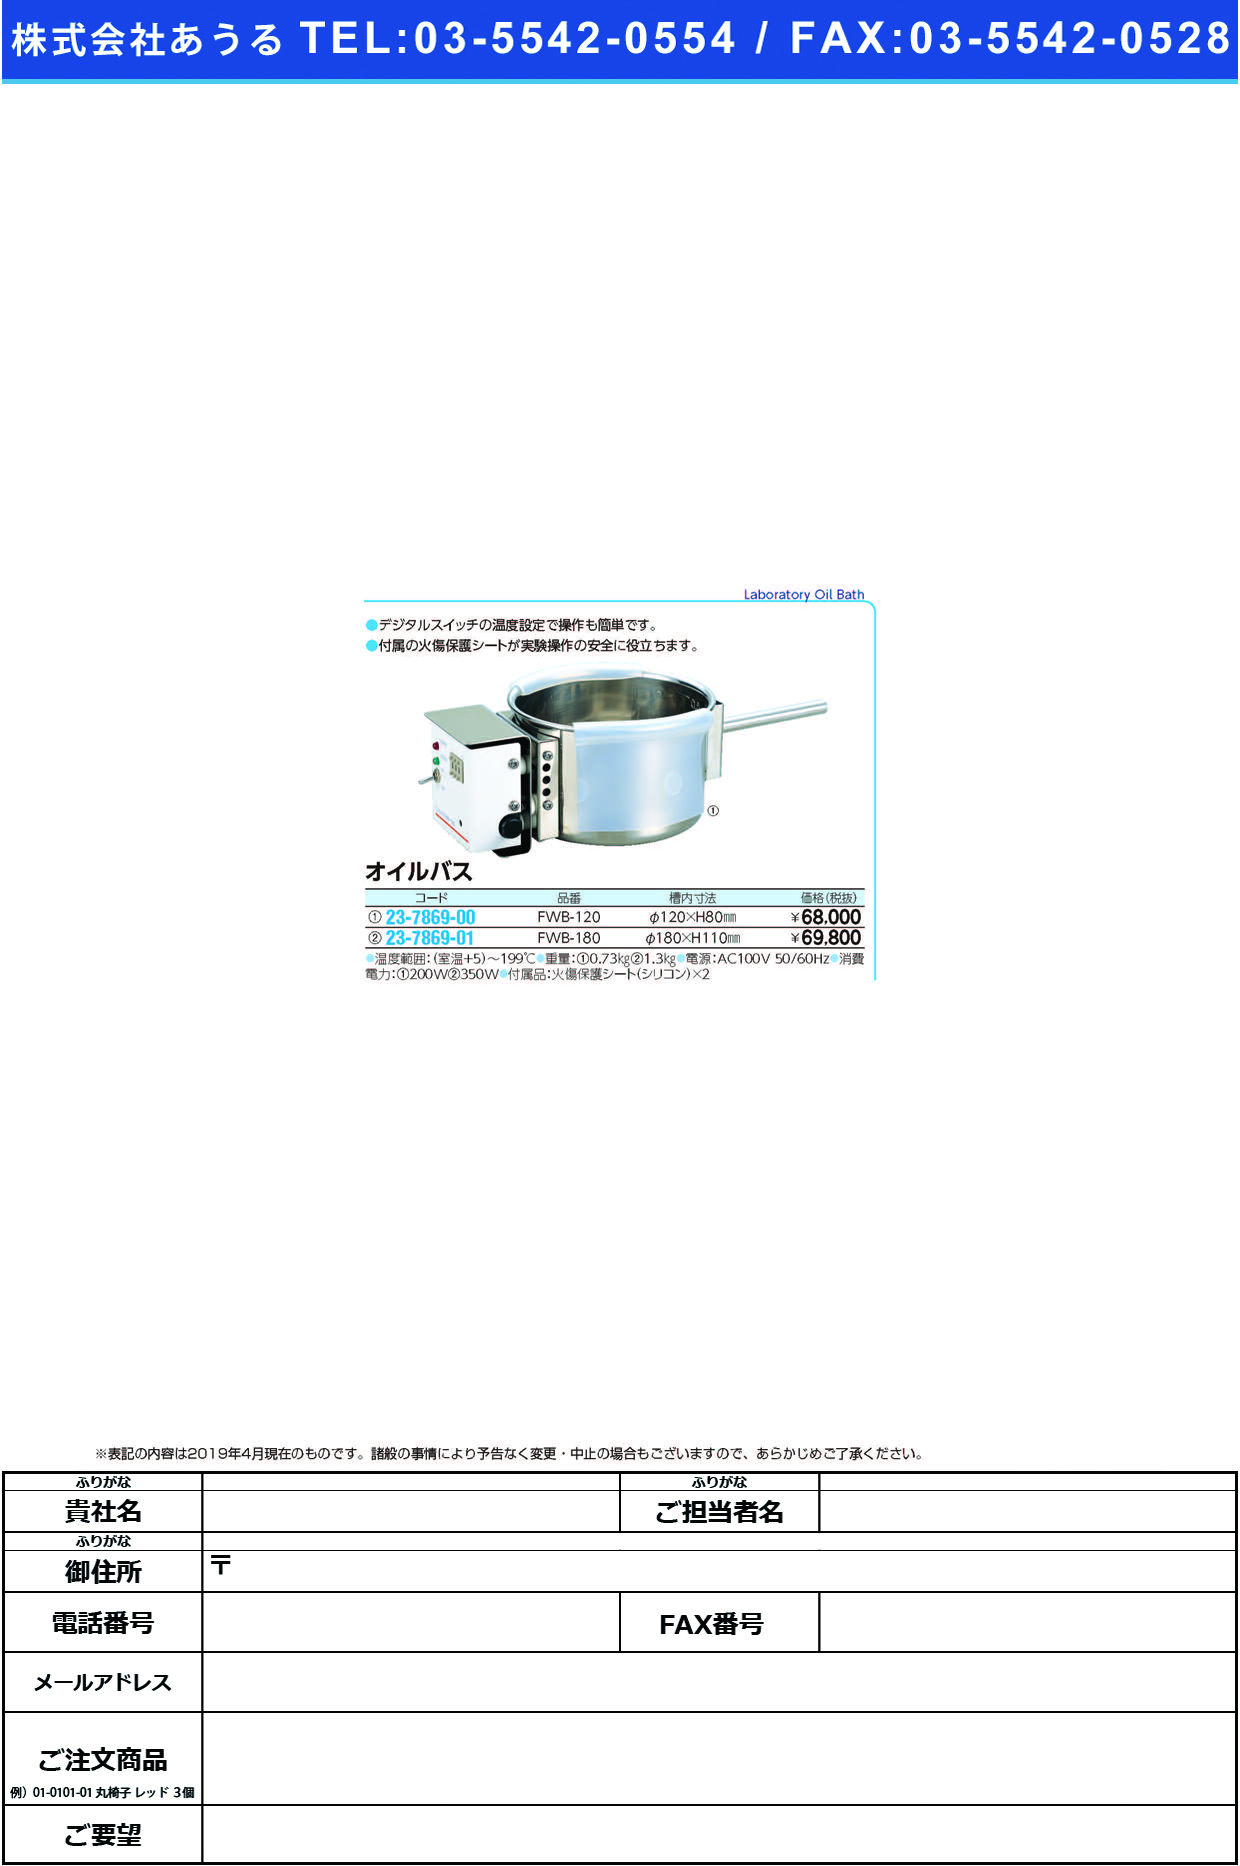 (23-7869-01)オイルバス FWB-180(ｹｲ180XH110MM ｵｲﾙﾊﾞｽ【1台単位】【2019年カタログ商品】